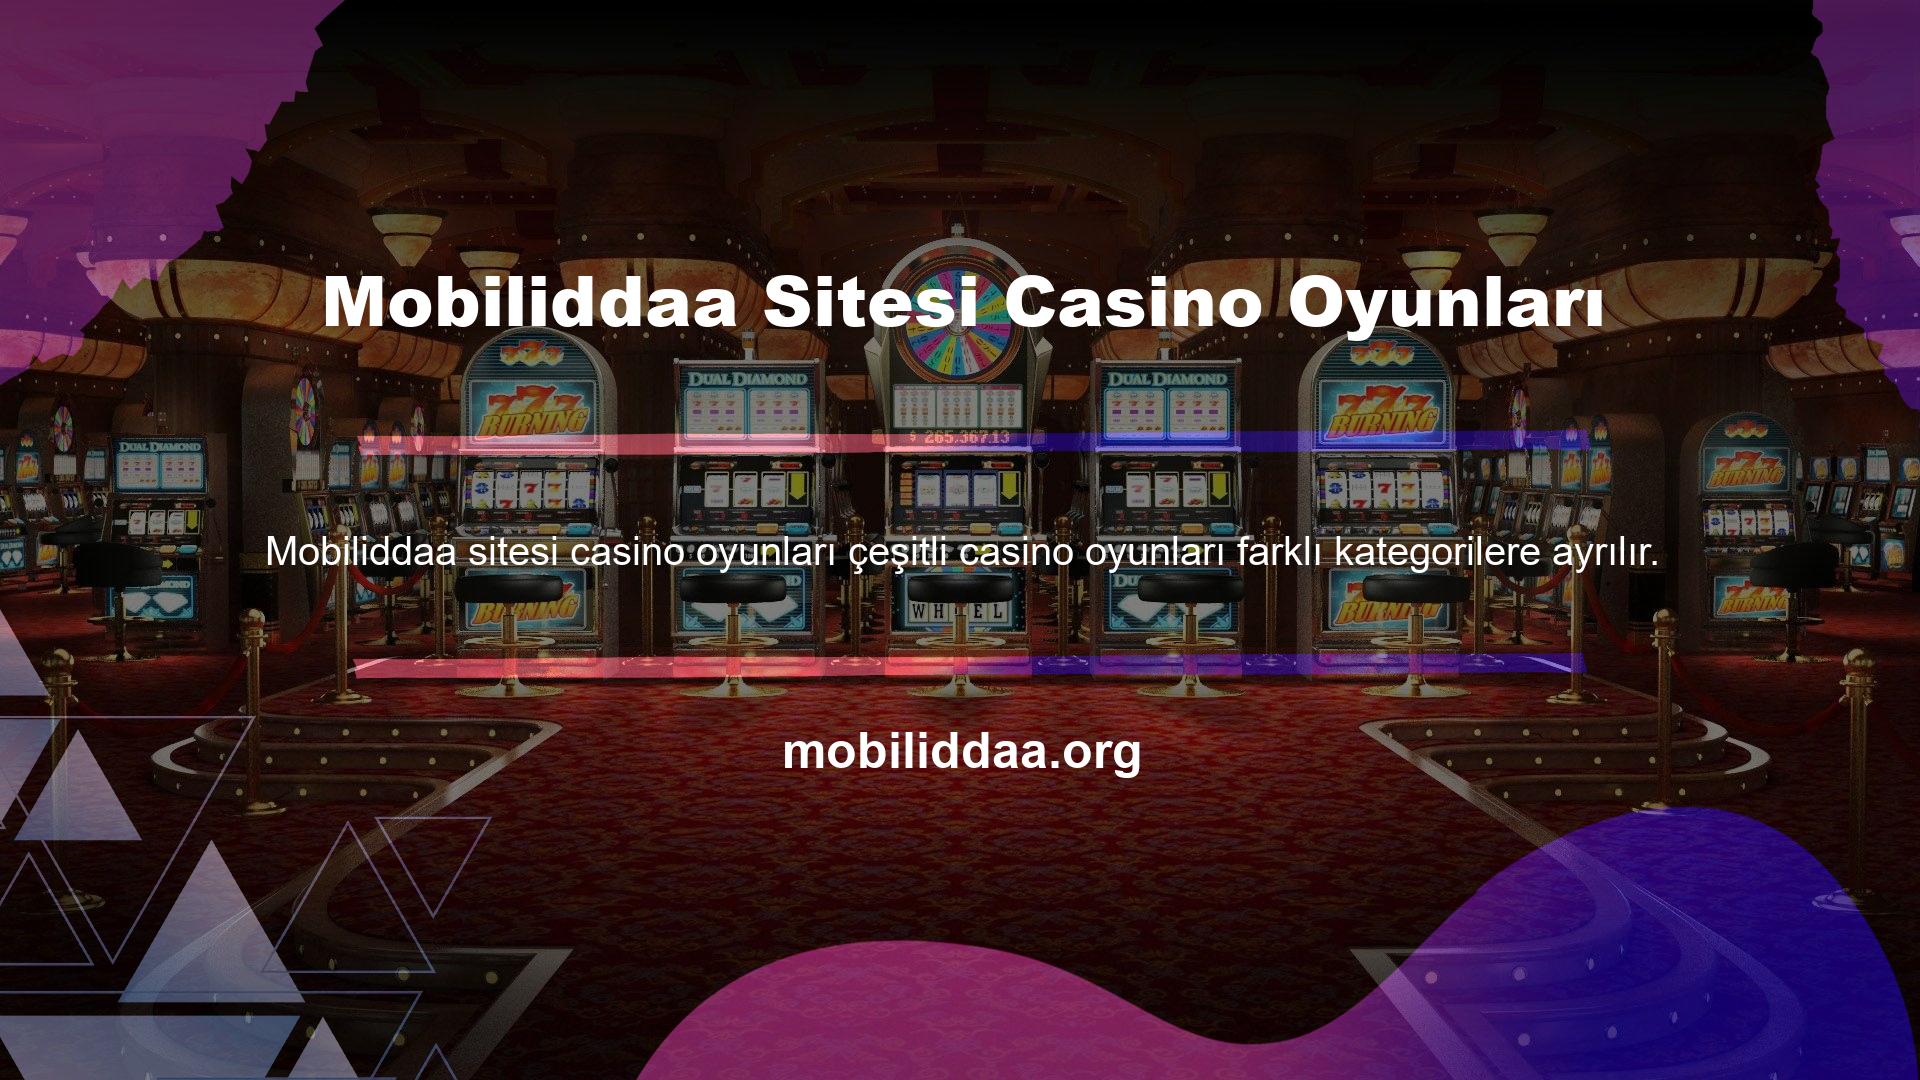 Tüm bu kategorilerin casinolar, canlı casinolar, canlı oyunlar, bingo ve poker için alt bölümleri vardır